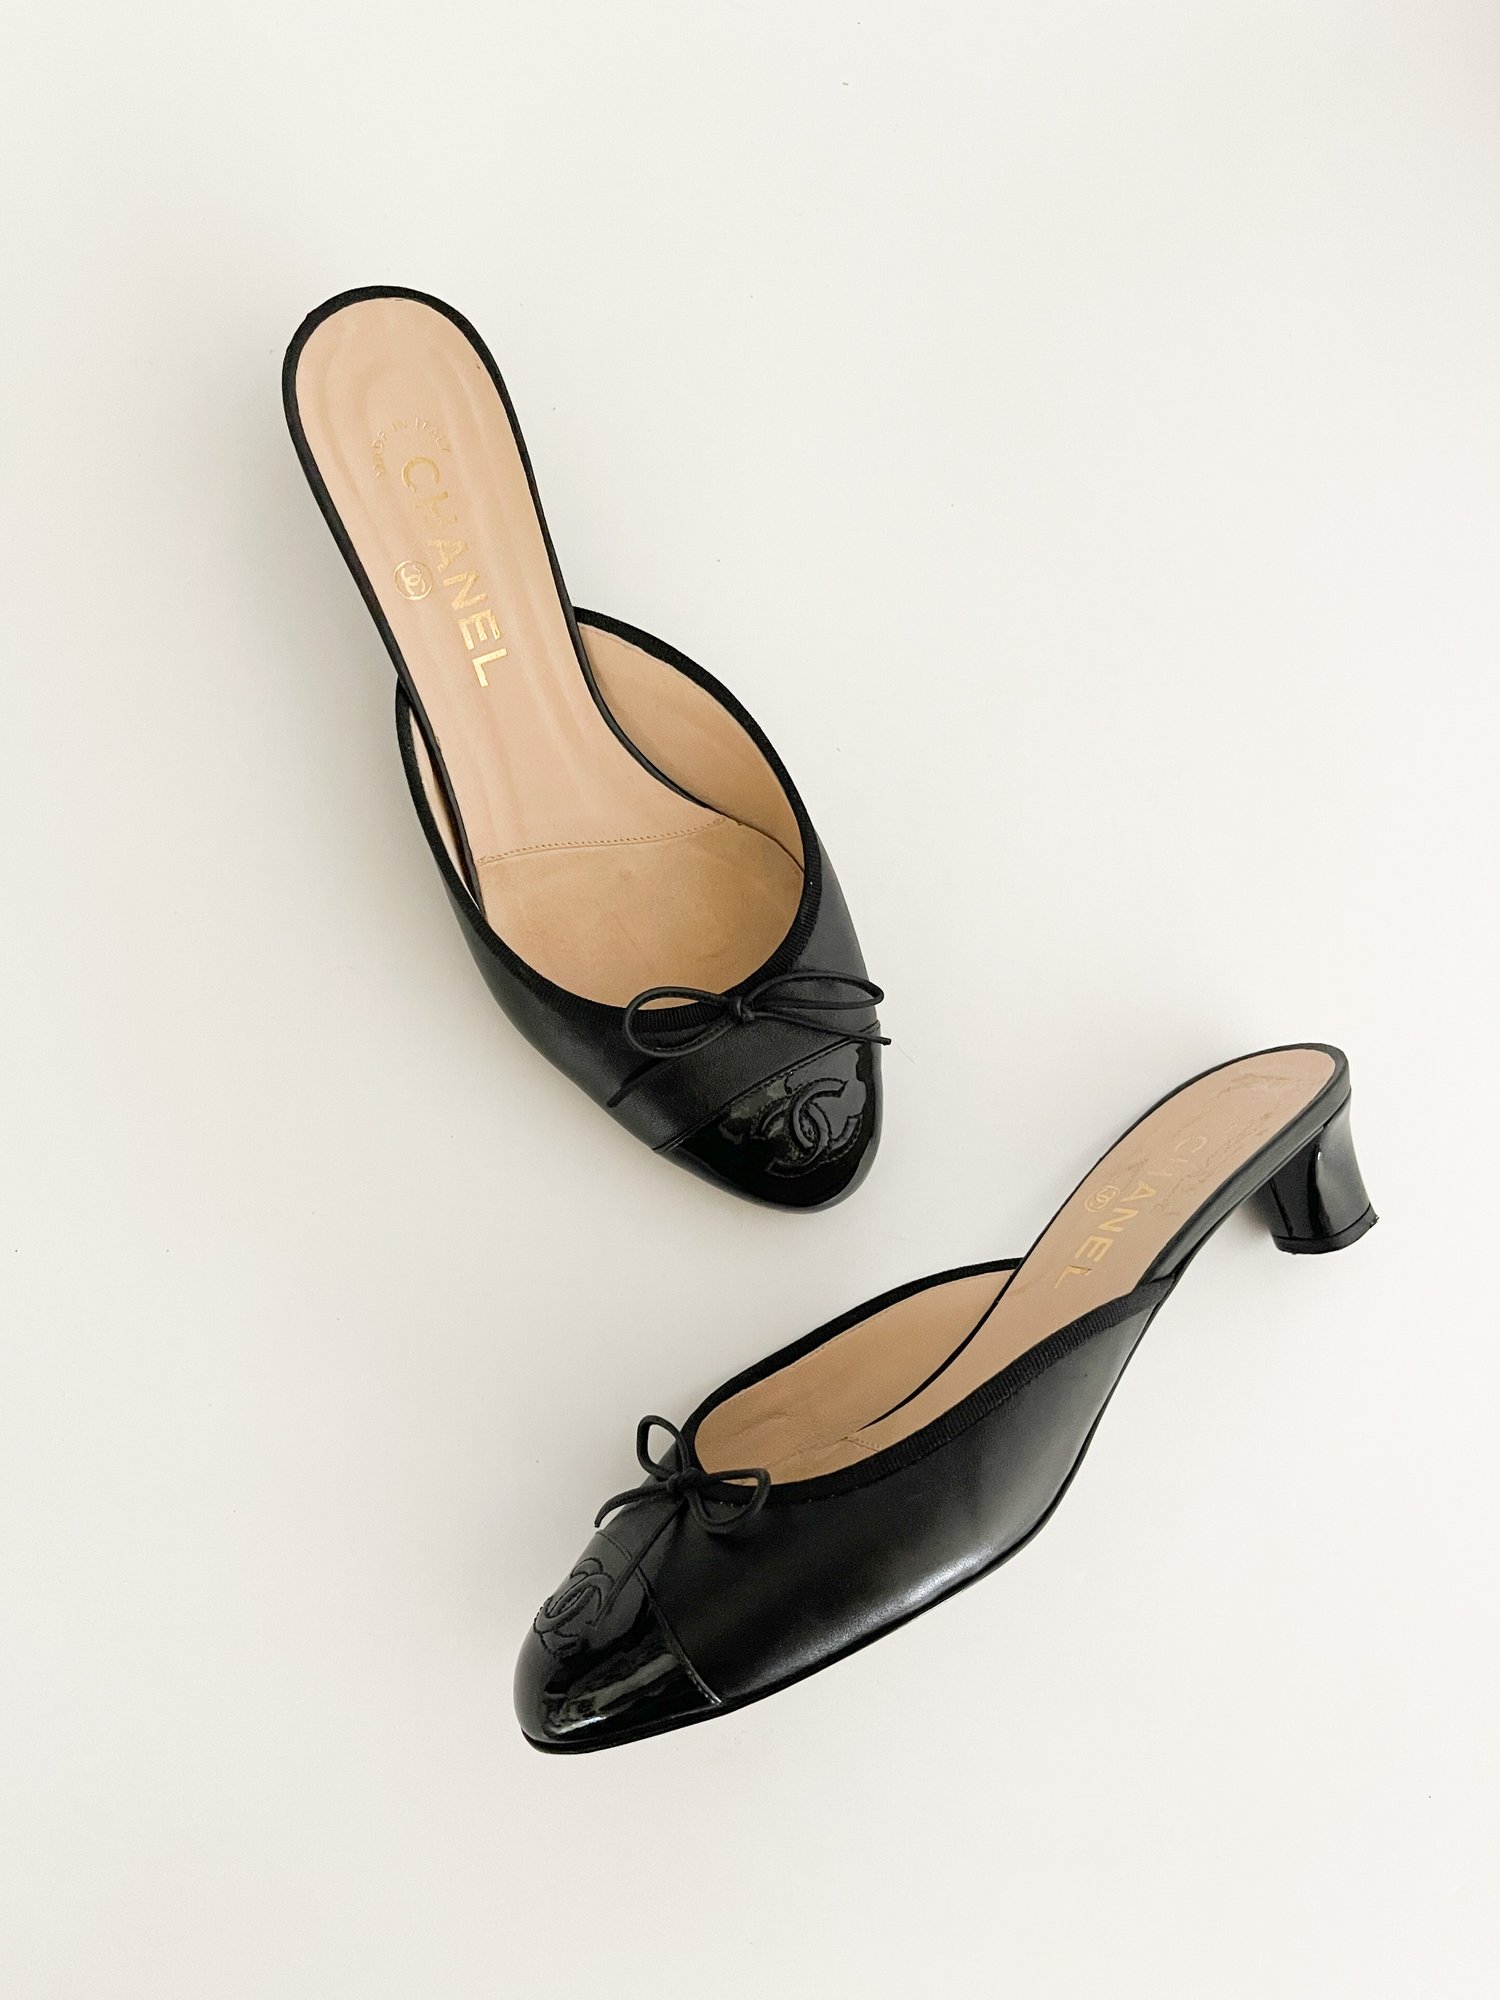 Chanel Iconic CC Black Toe Cap Bow Kitten Mule Heels (US 8.5